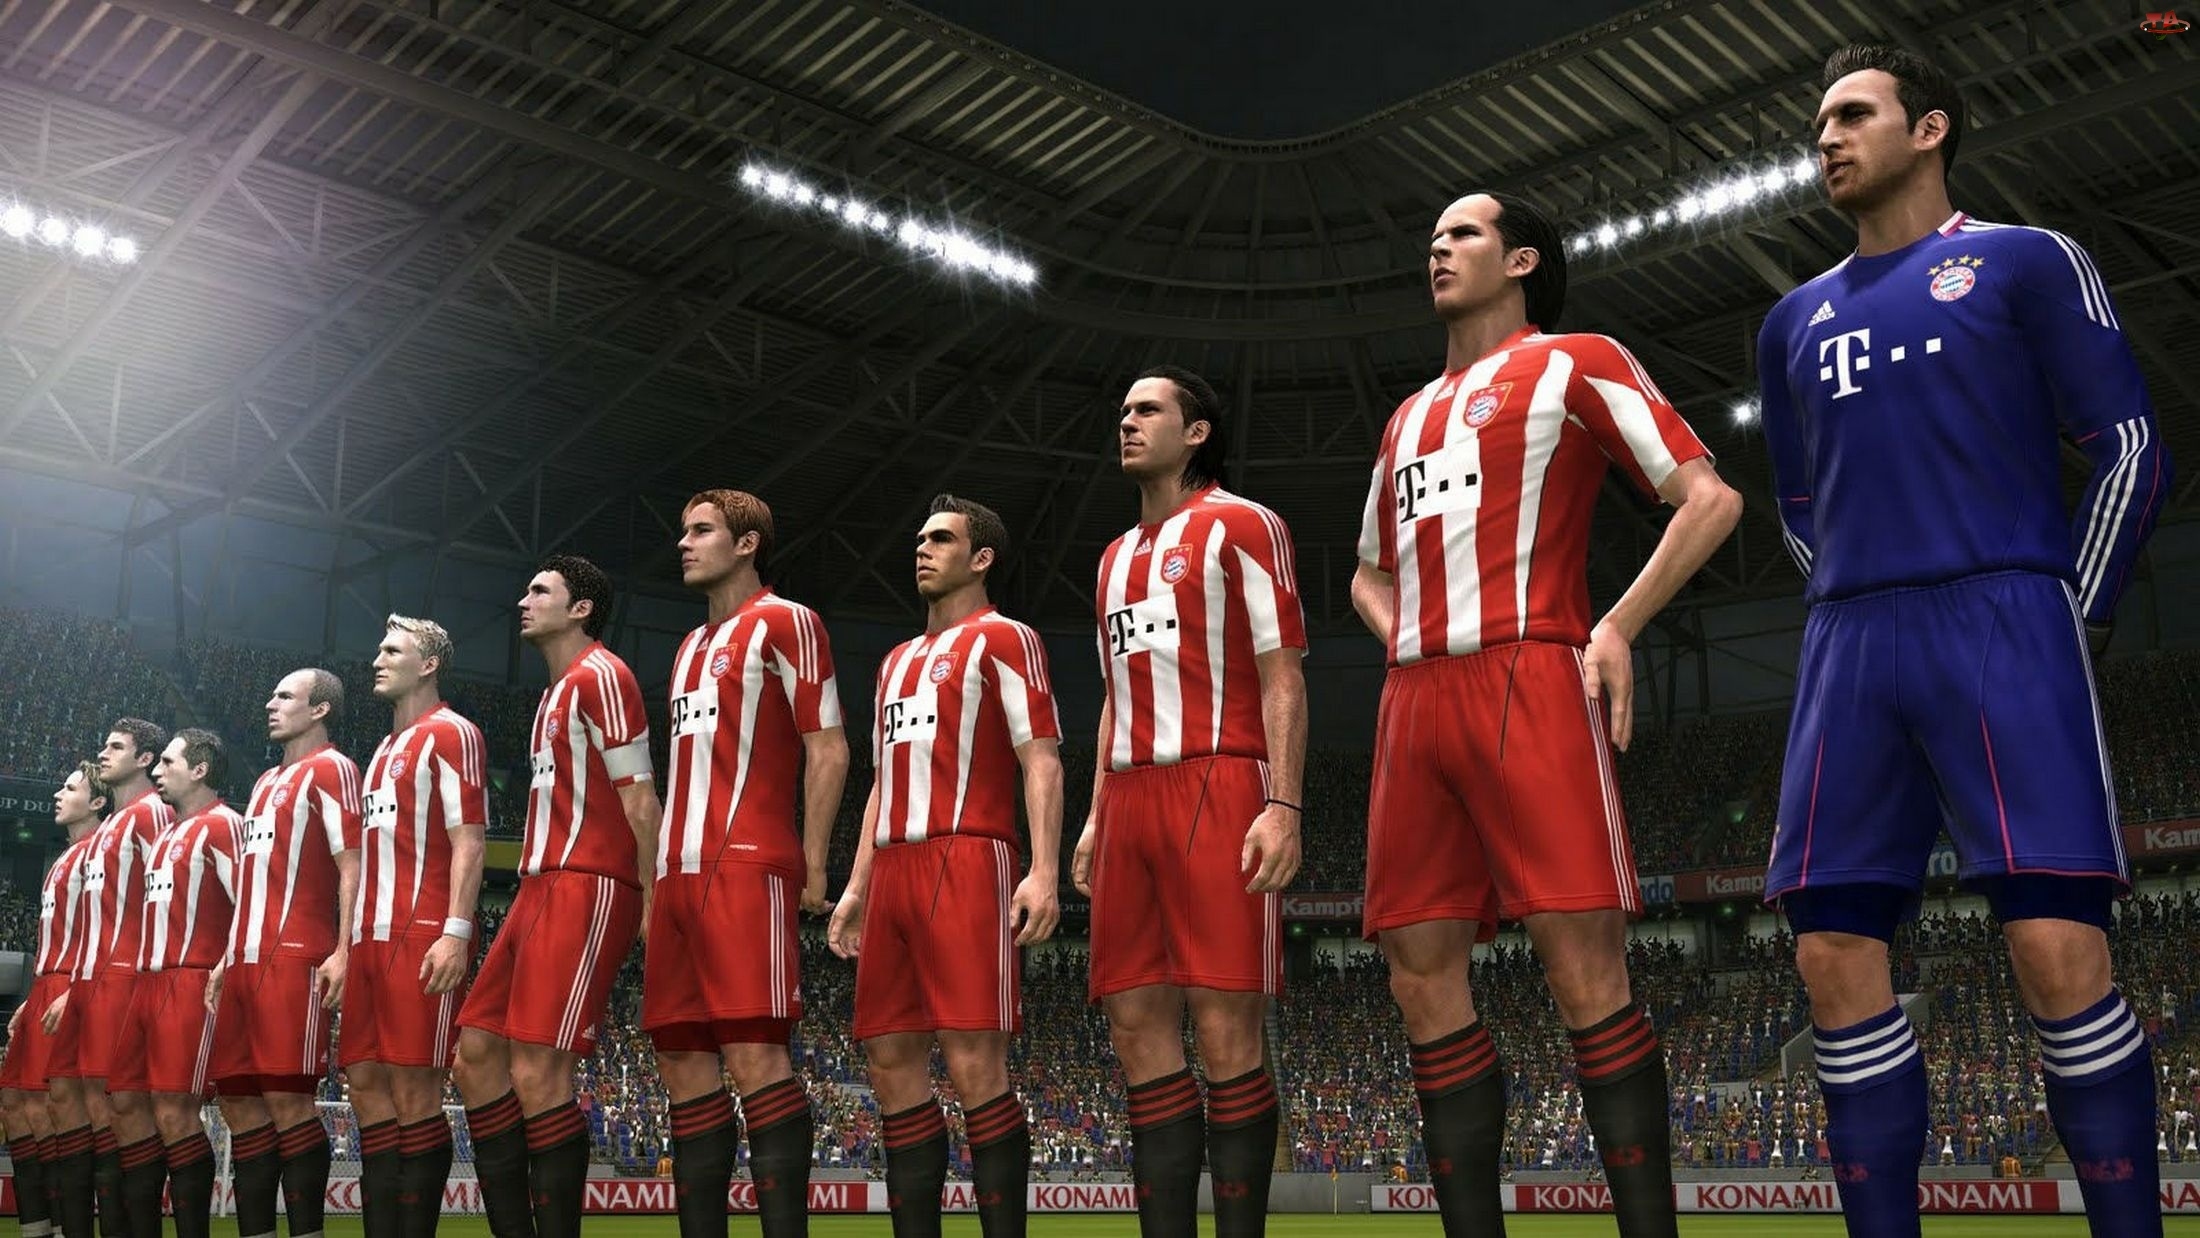 Screen, Pro Evolution Soccer 2011